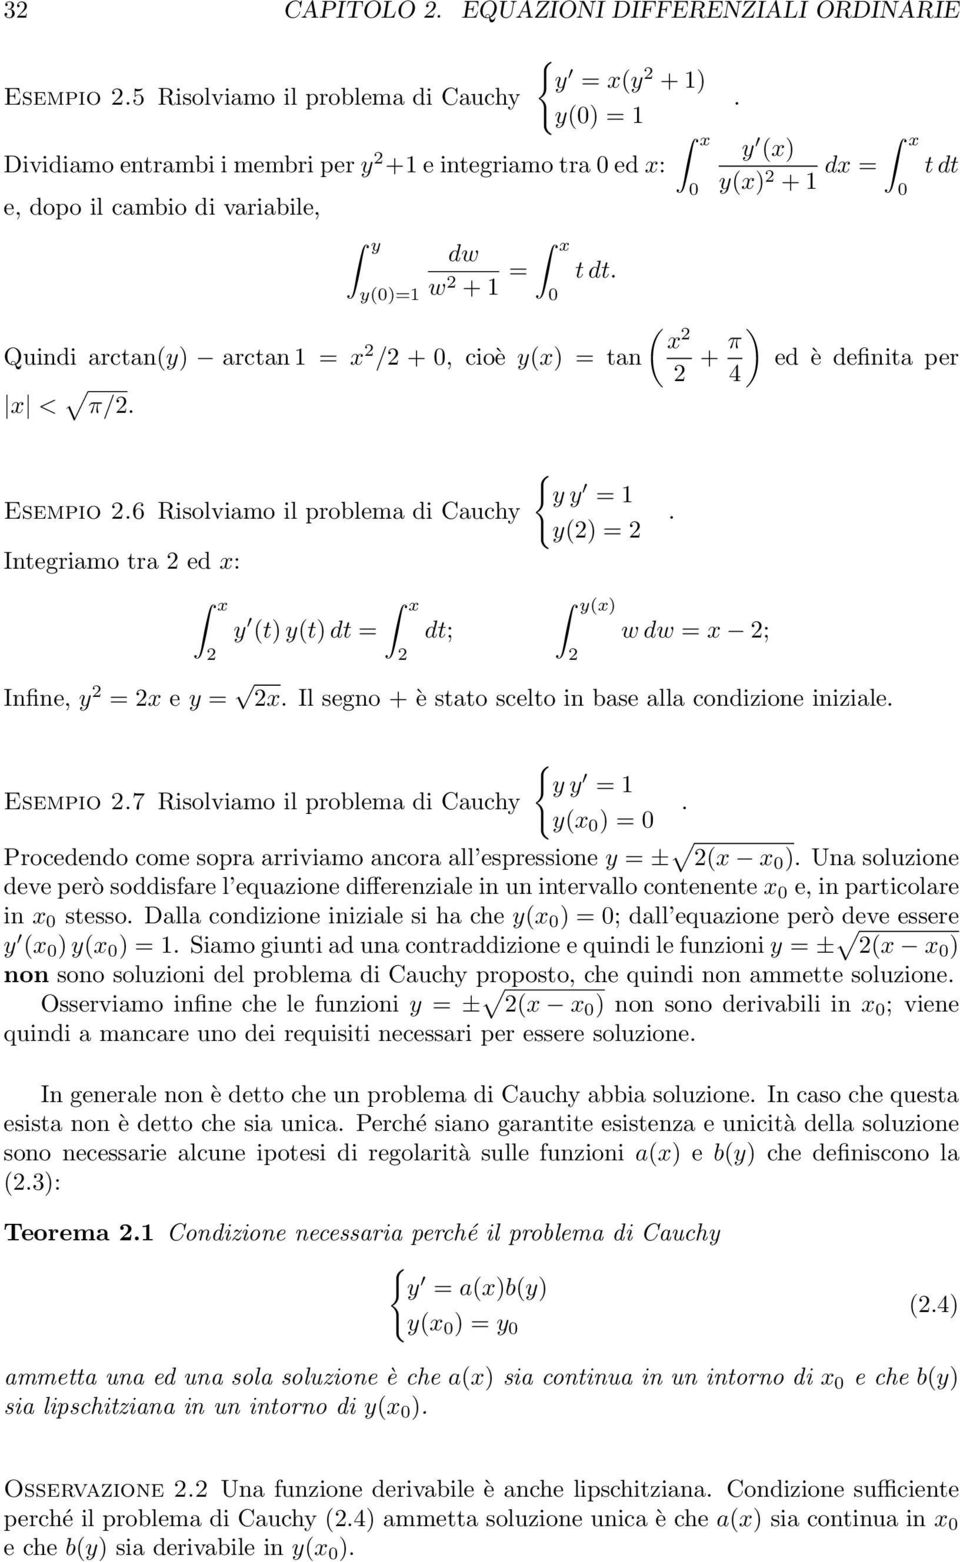 problema di Cauchy Integriamo tra 2 ed x: y y = 1 y(2) = 2 y (t) y(t) dt = 2 2 dt; y(x) 2 w dw = x 2; Infine, y 2 = 2x e y = 2x Il segno + è stato scelto in base alla condizione iniziale Esempio 27